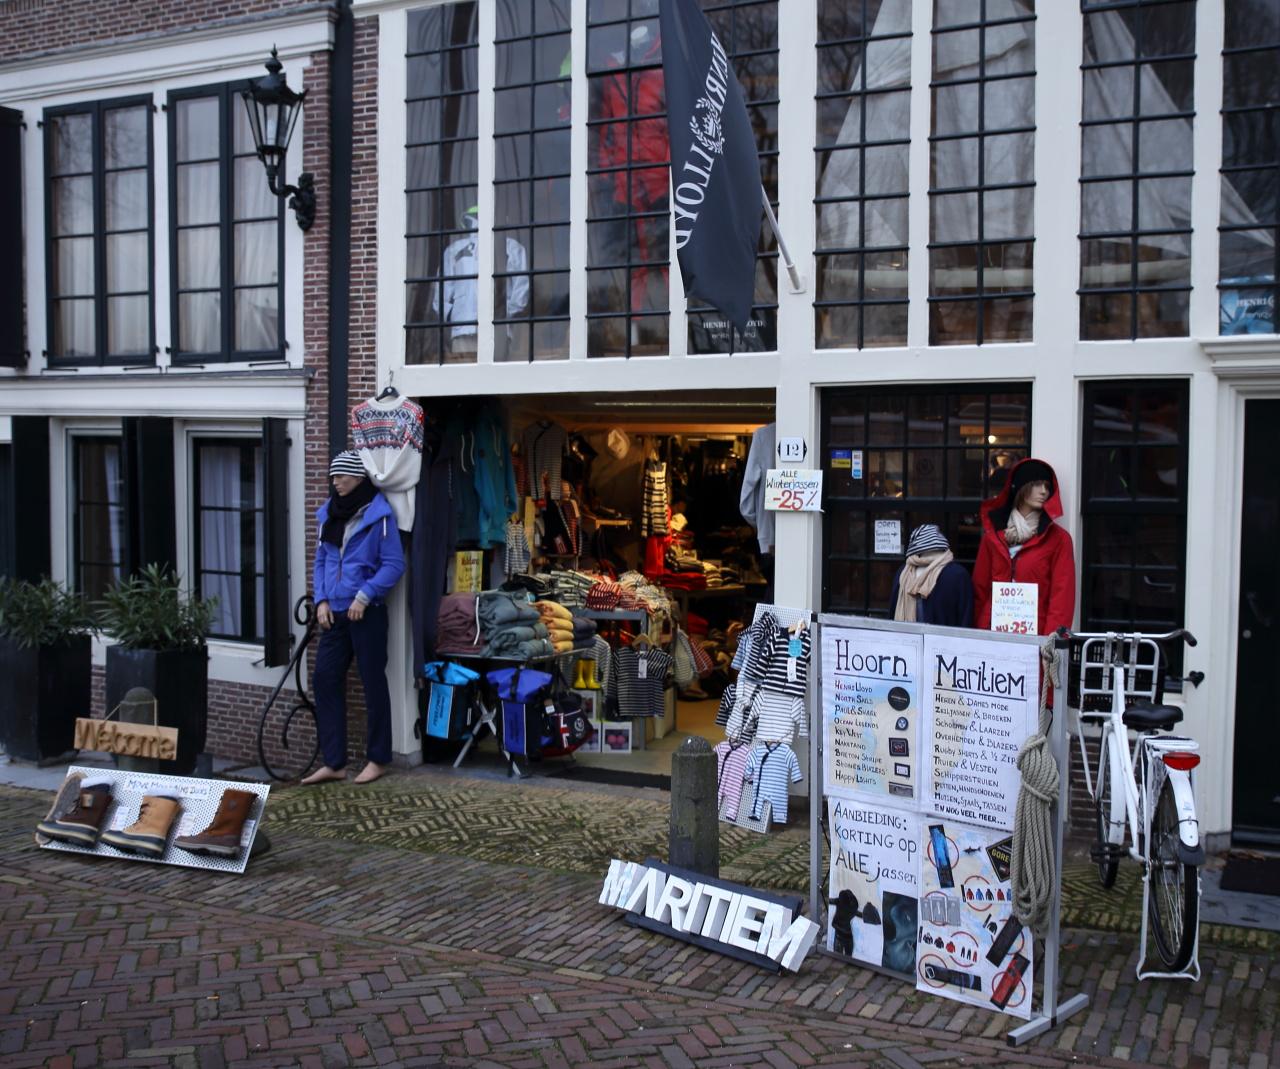 Foto Hoorn Maritiem in Hoorn, Winkelen, Mode & kleding - #2